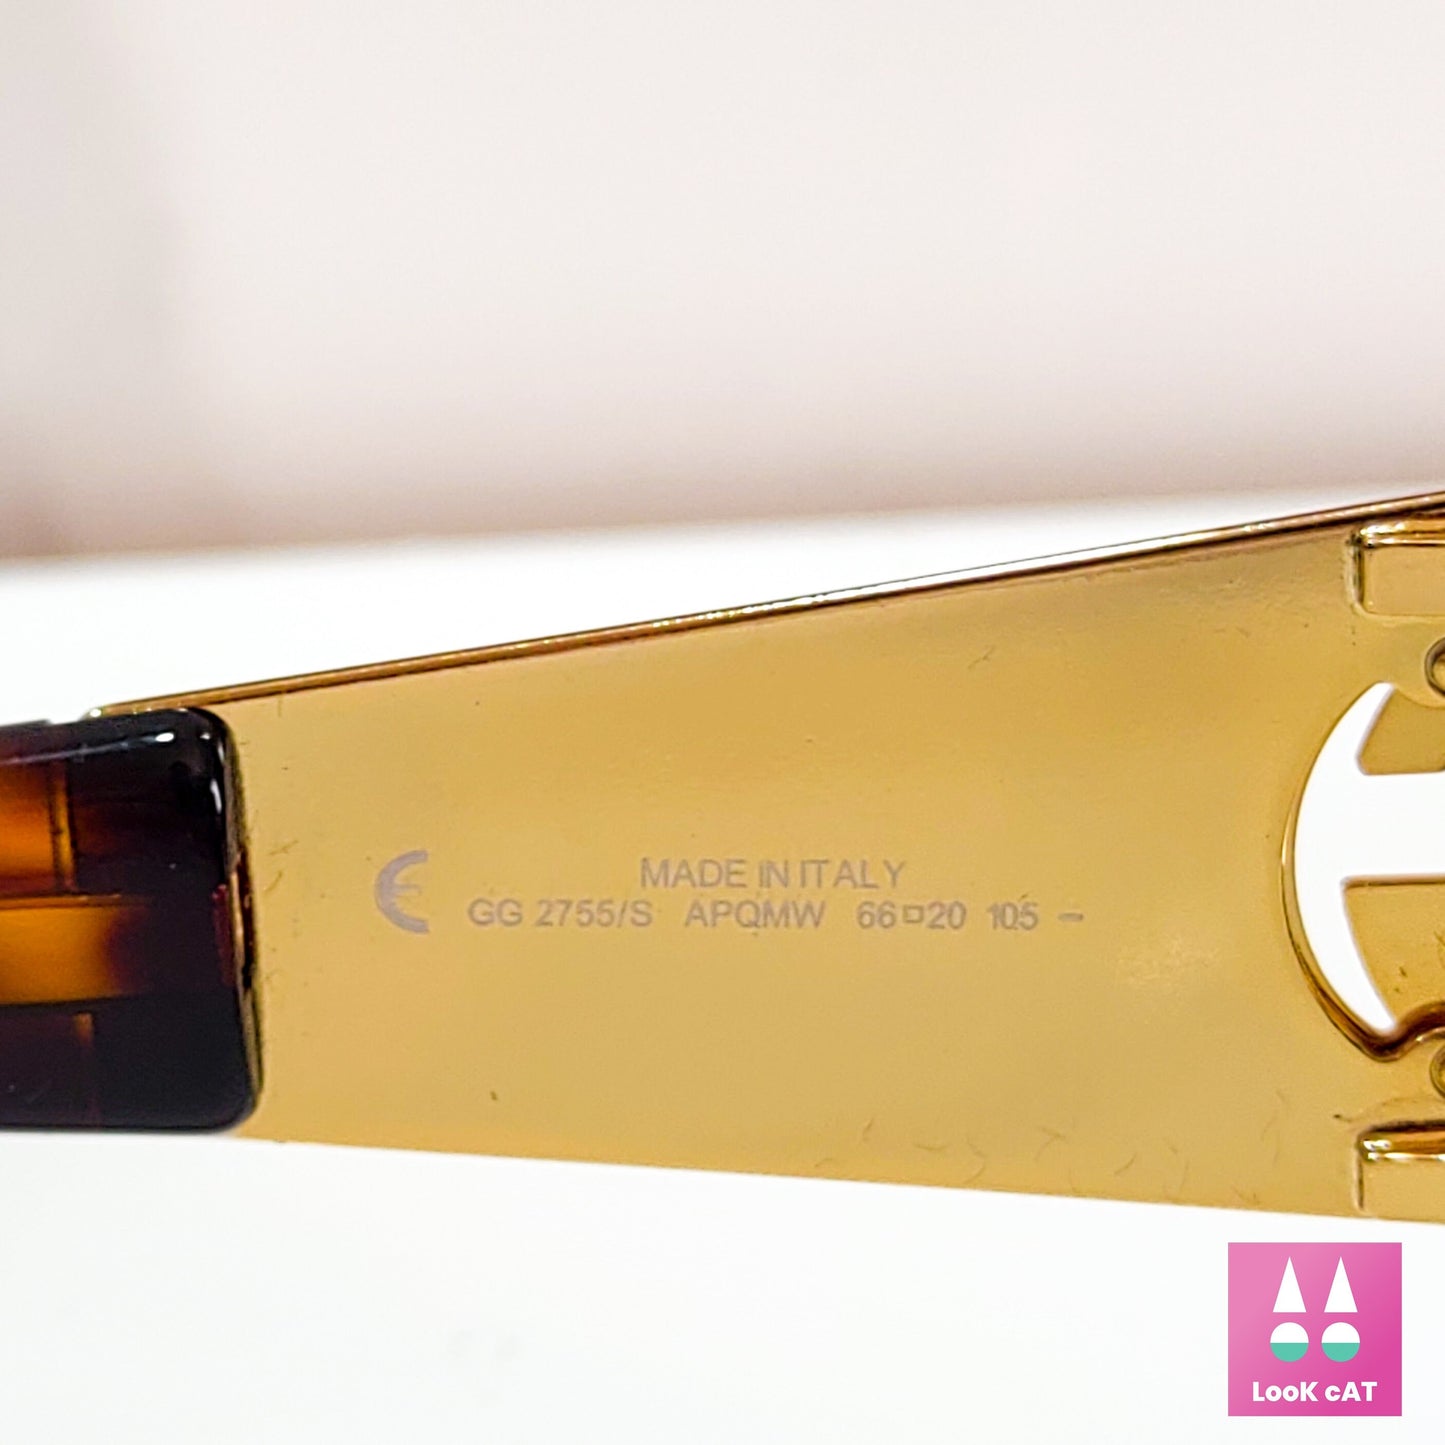 Gucci 2755 复古金色环绕式盾牌太阳镜 NOS 眼镜 lunette brille y2k 90s